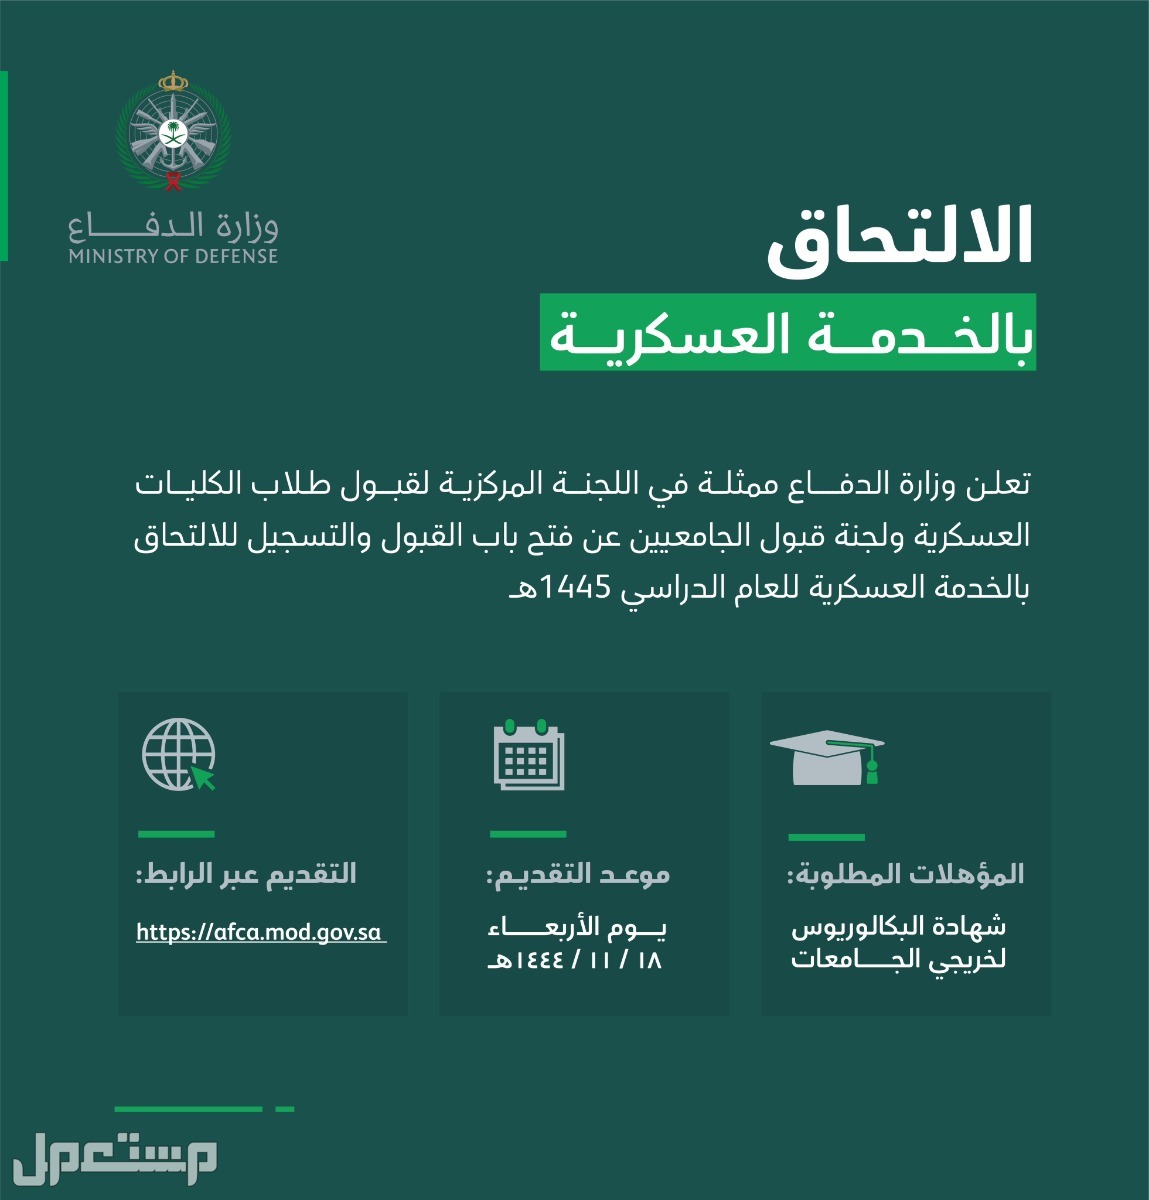 موعد فتح باب القبول والتسجيل بالخدمة العسكرية للخريجين الجامعيين 1445 في عمان الالتحاق بالخدمة العسكرية